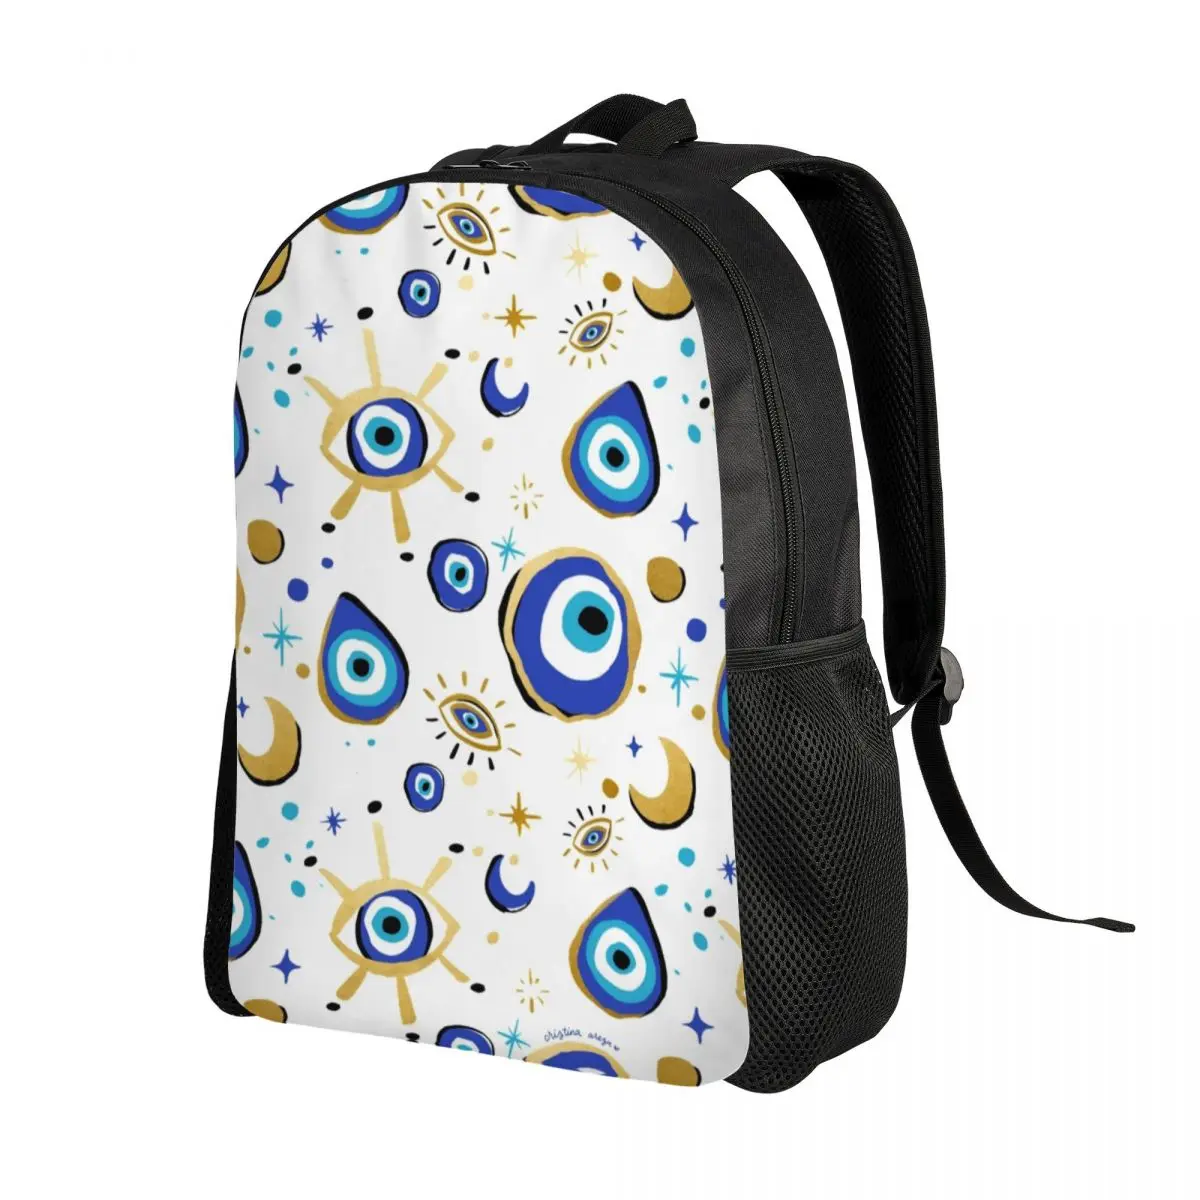 

Средиземноморский синий и золотой дорожный рюкзак с изображением сглаза, школьный рюкзак для ноутбука, сумка для книг, Хамса Назар, амулет в стиле бохо, студенческий рюкзак для колледжа, рюкзаки